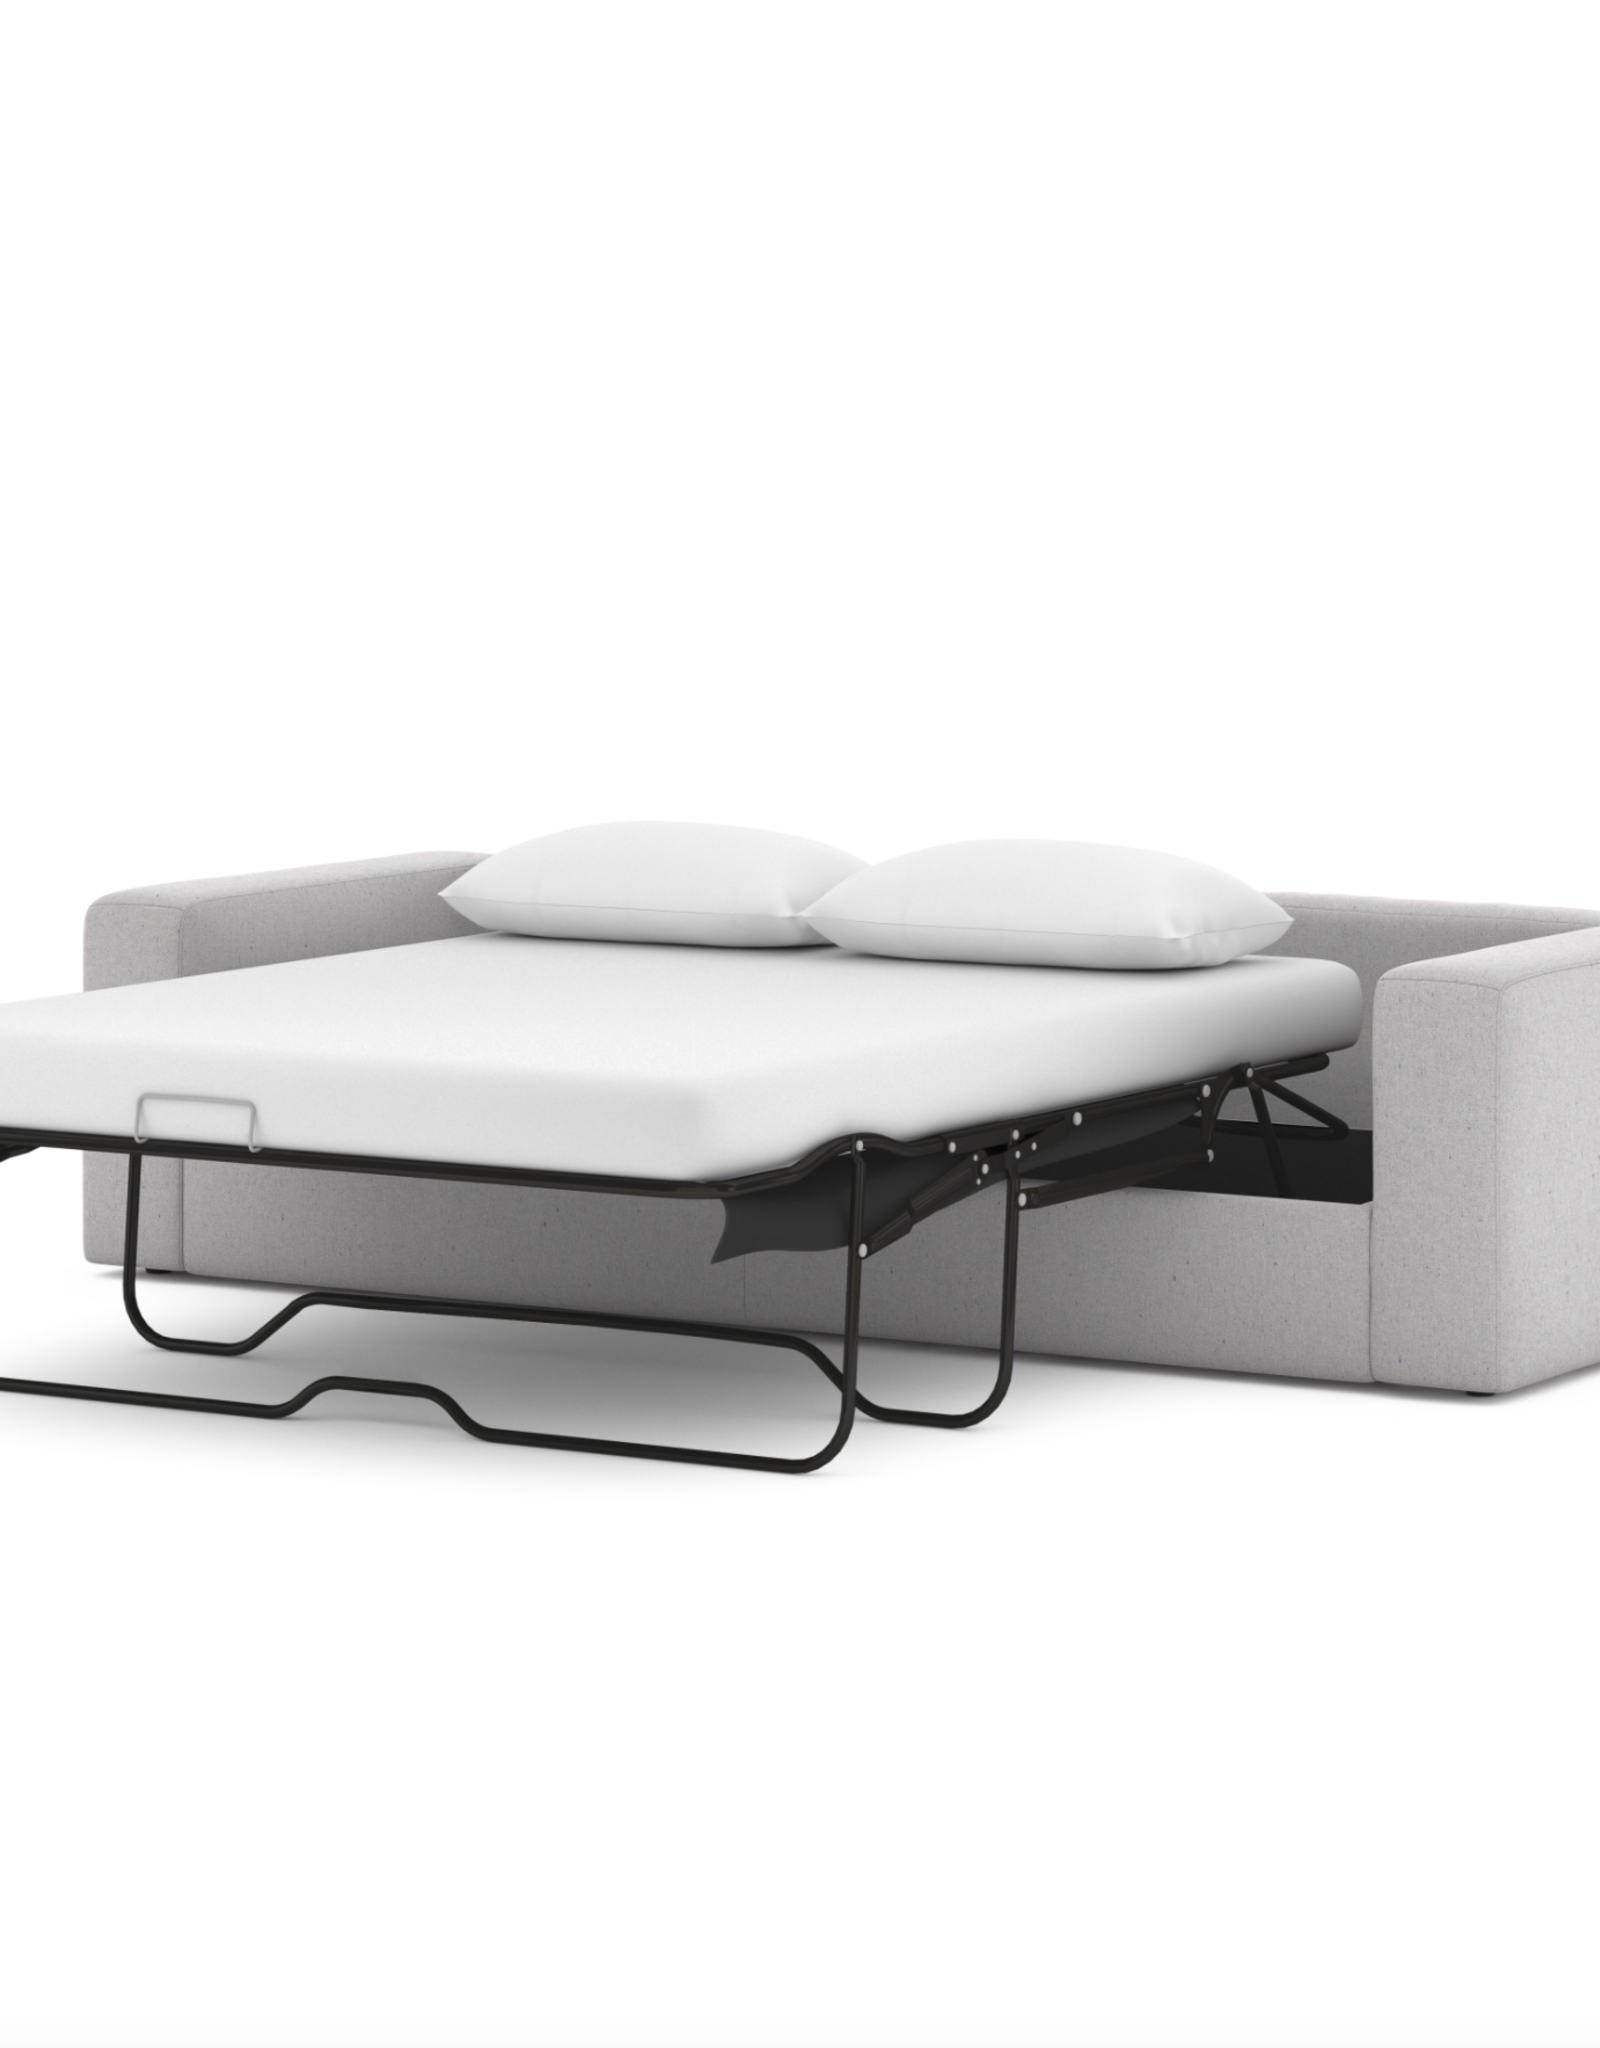 Bloor Sofa Bed - 95" in Union Grey